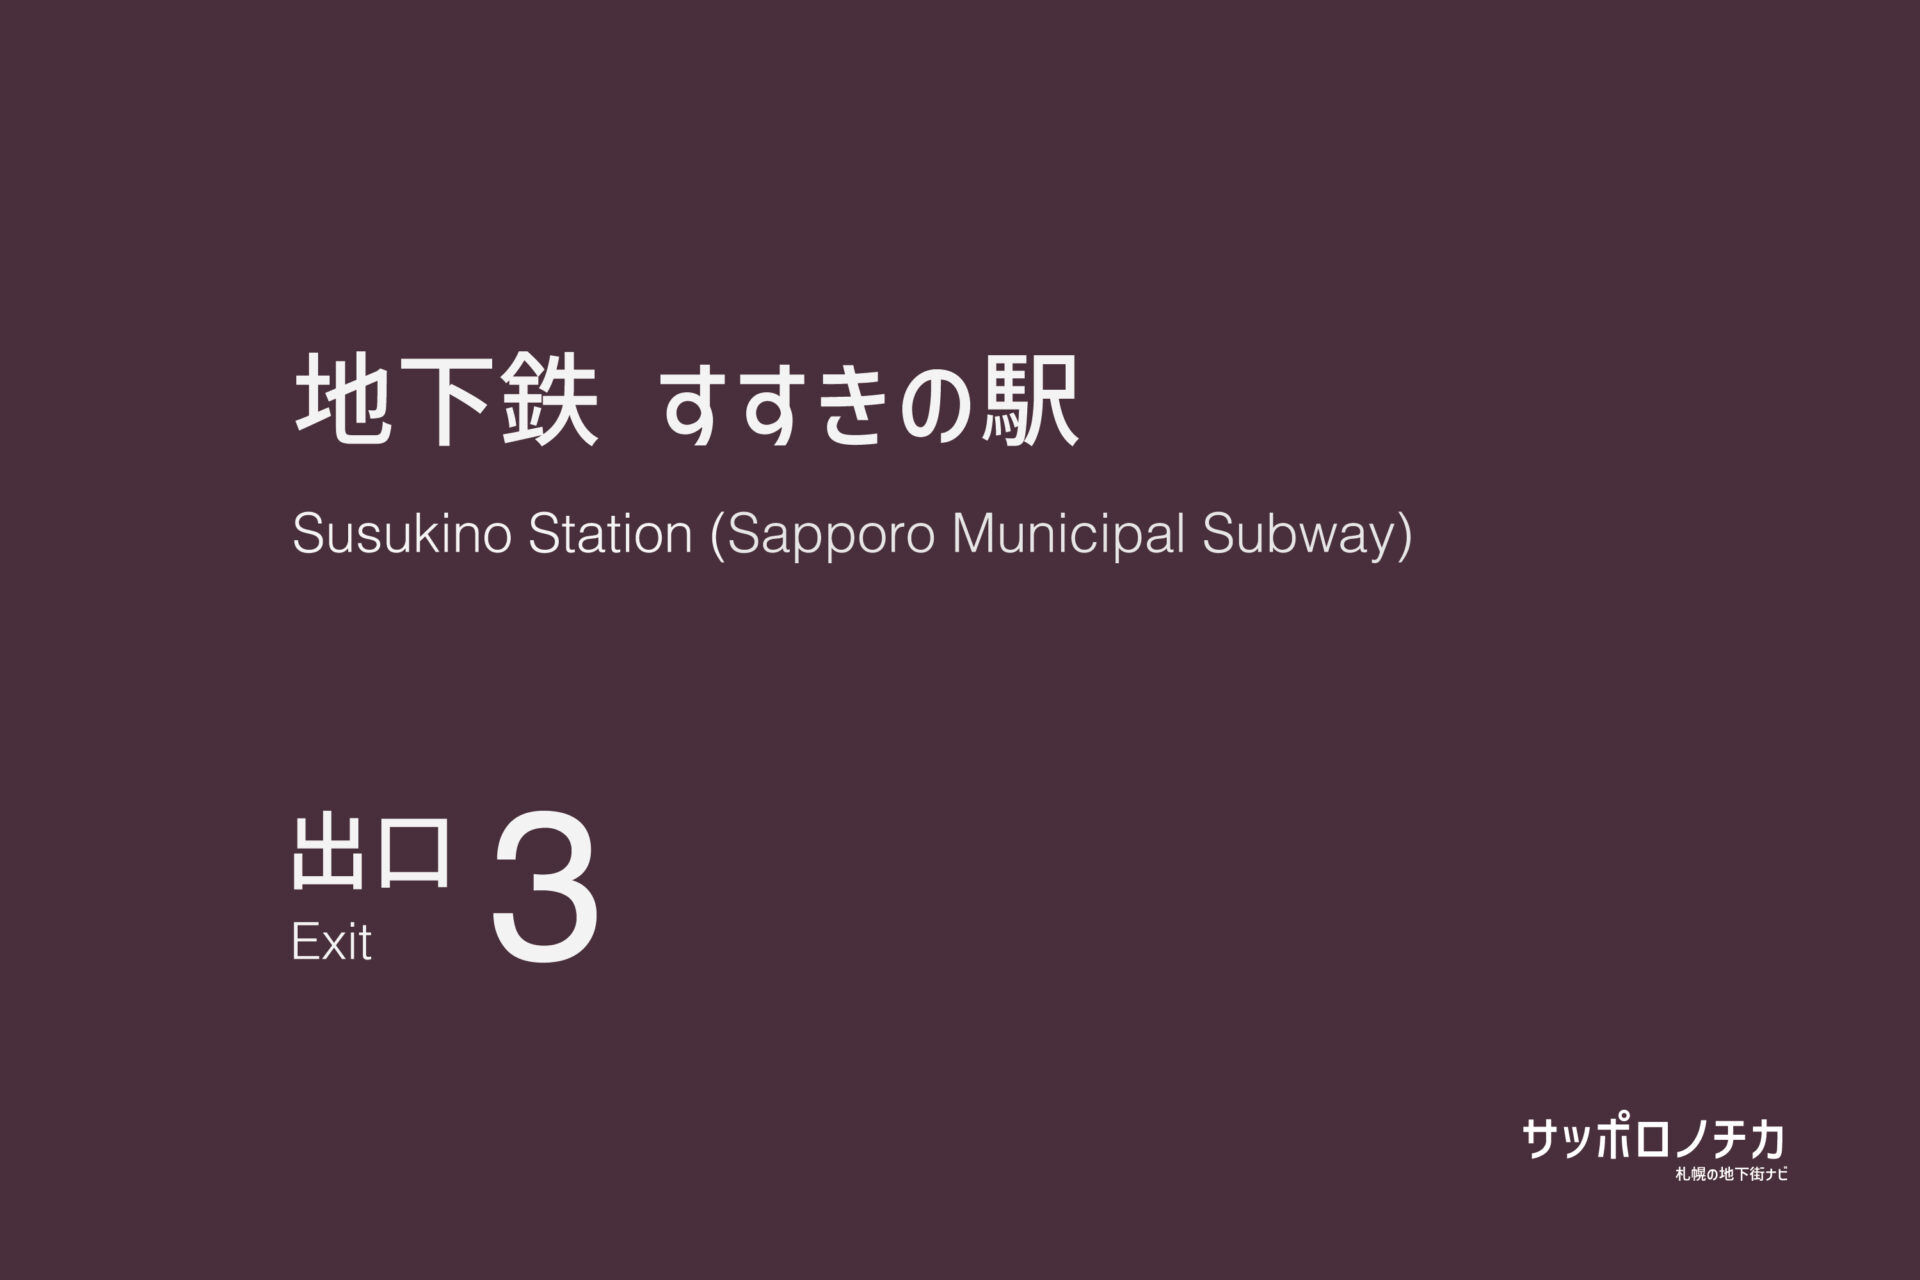 札幌市営地下鉄「すすきの駅」3番出口